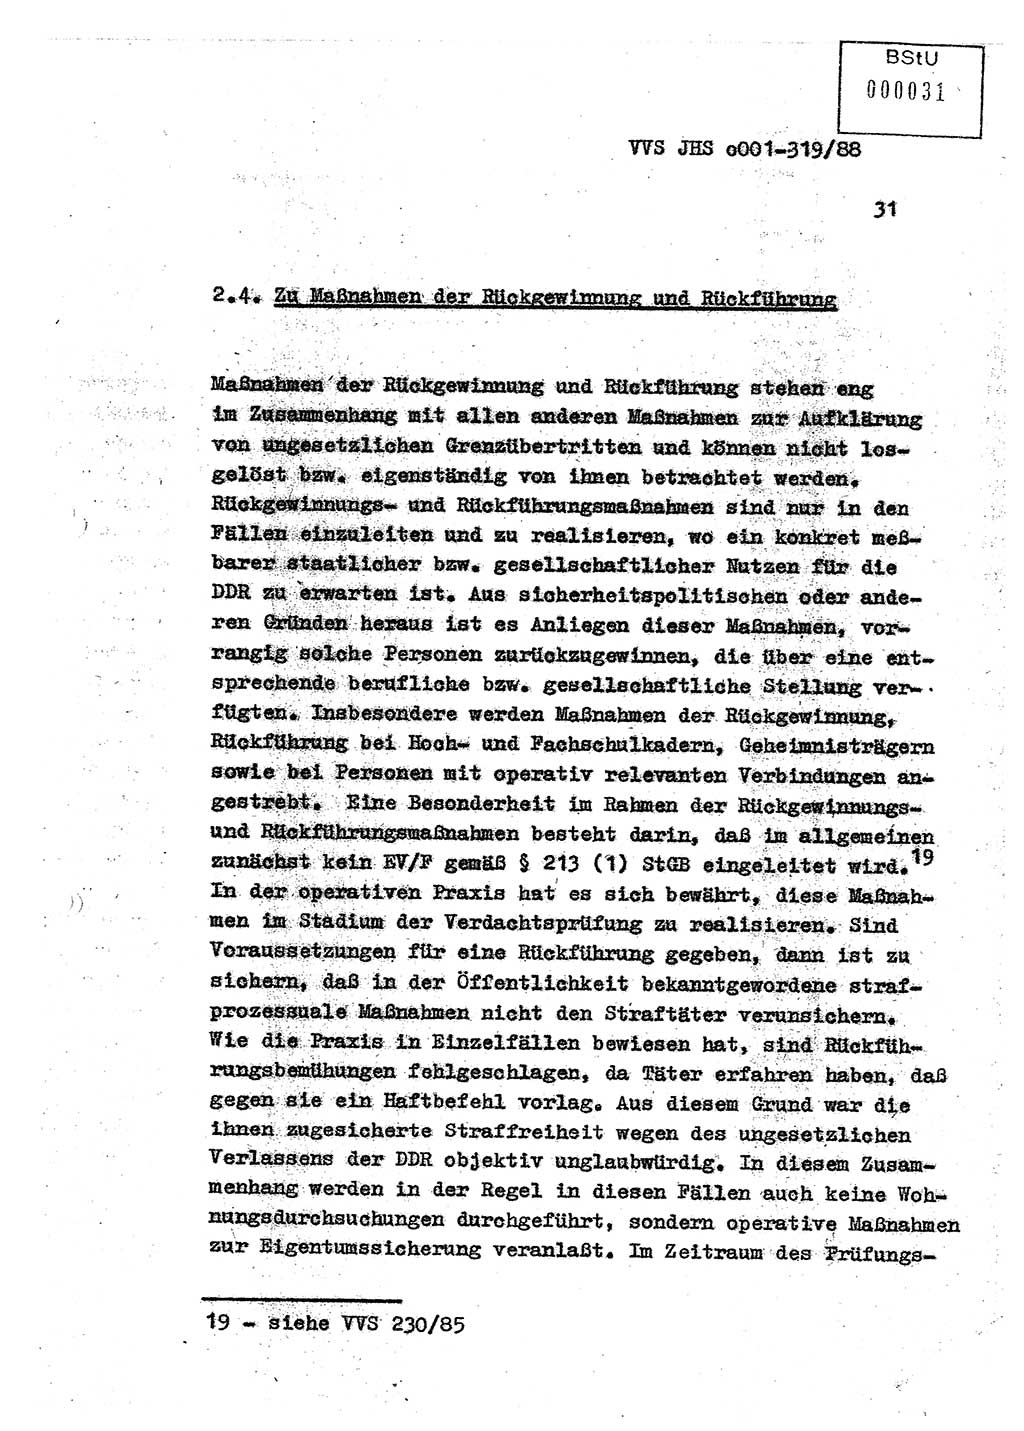 Diplomarbeit Offiziersschüler Holger Zirnstein (HA Ⅸ/9), Ministerium für Staatssicherheit (MfS) [Deutsche Demokratische Republik (DDR)], Juristische Hochschule (JHS), Vertrauliche Verschlußsache (VVS) o001-319/88, Potsdam 1988, Blatt 31 (Dipl.-Arb. MfS DDR JHS VVS o001-319/88 1988, Bl. 31)